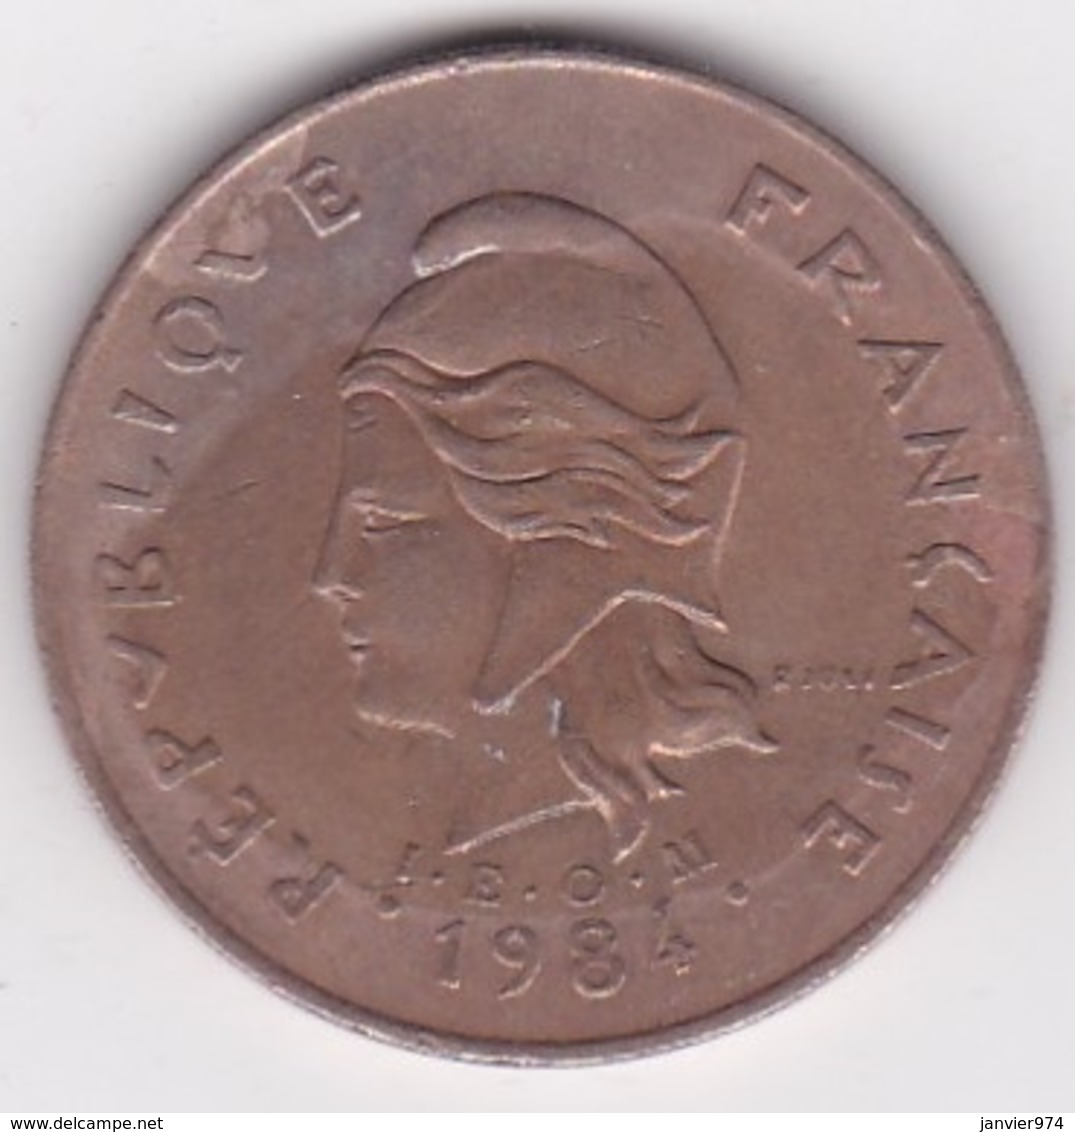 Nouvelle-Calédonie . 100 Francs 1984 . En Cupro Nickel Aluminium, Lec# 134 - Nouvelle-Calédonie